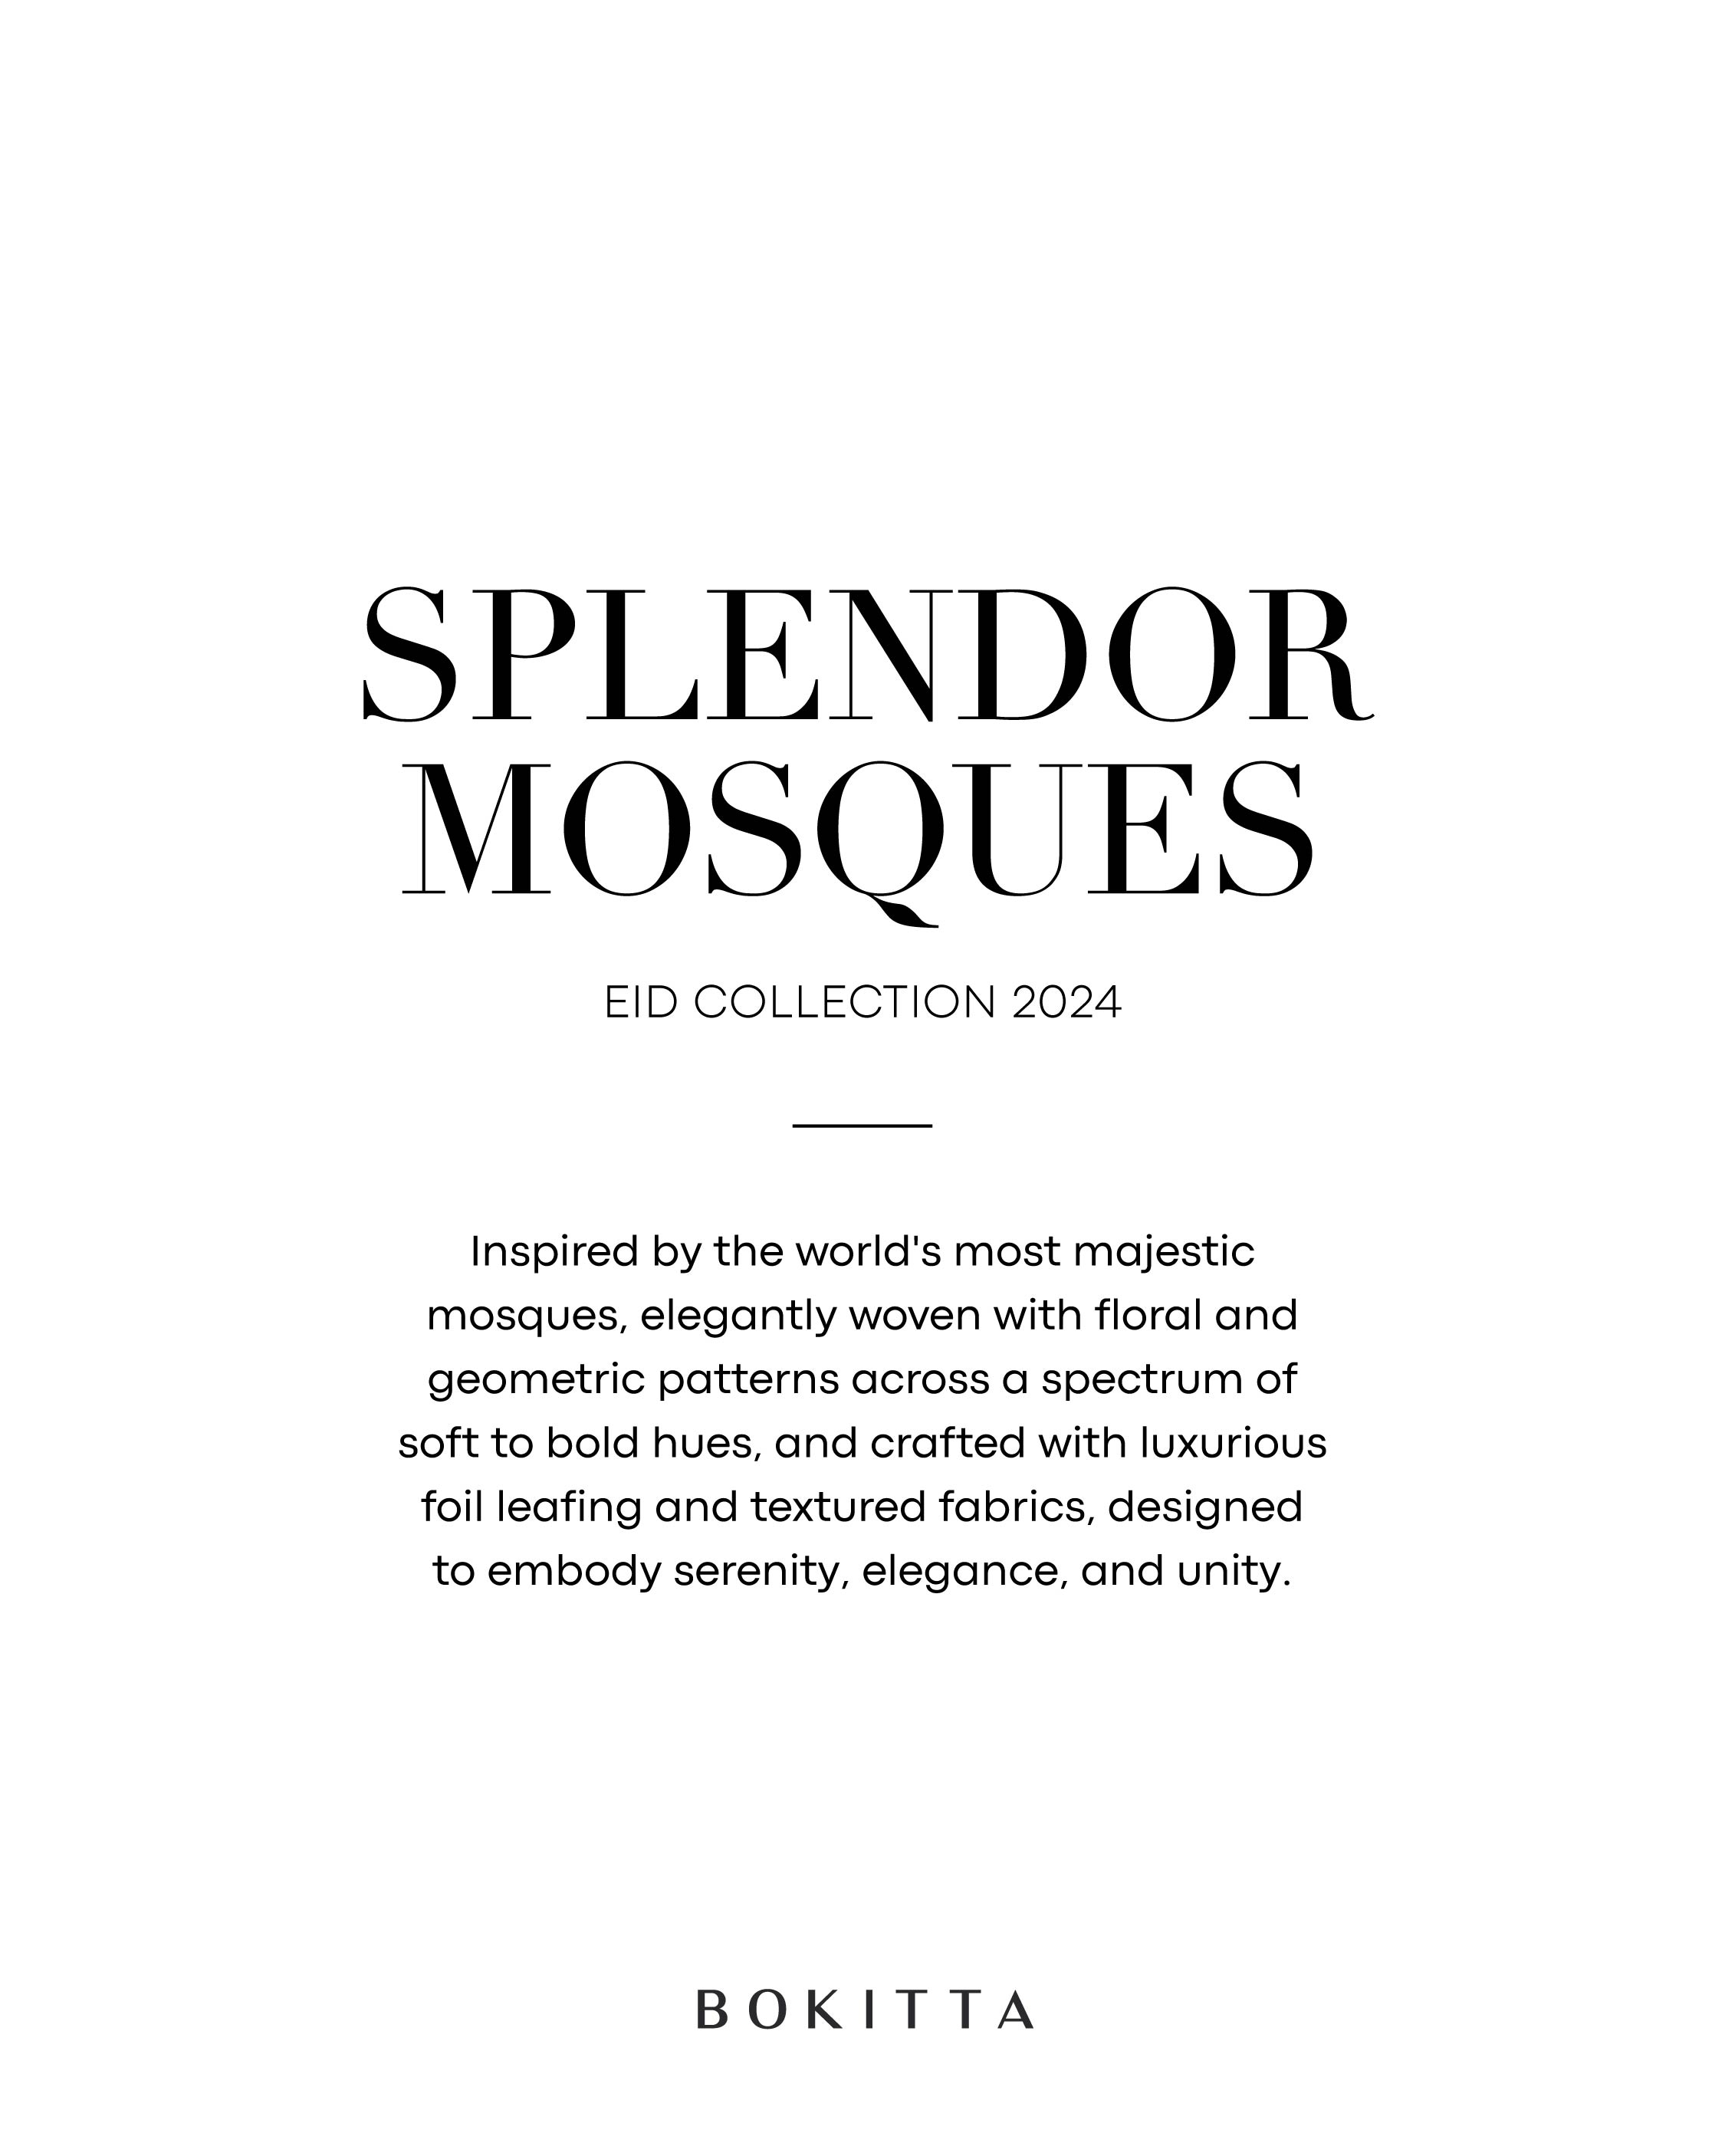 Splendor-Mosques-Posts-02